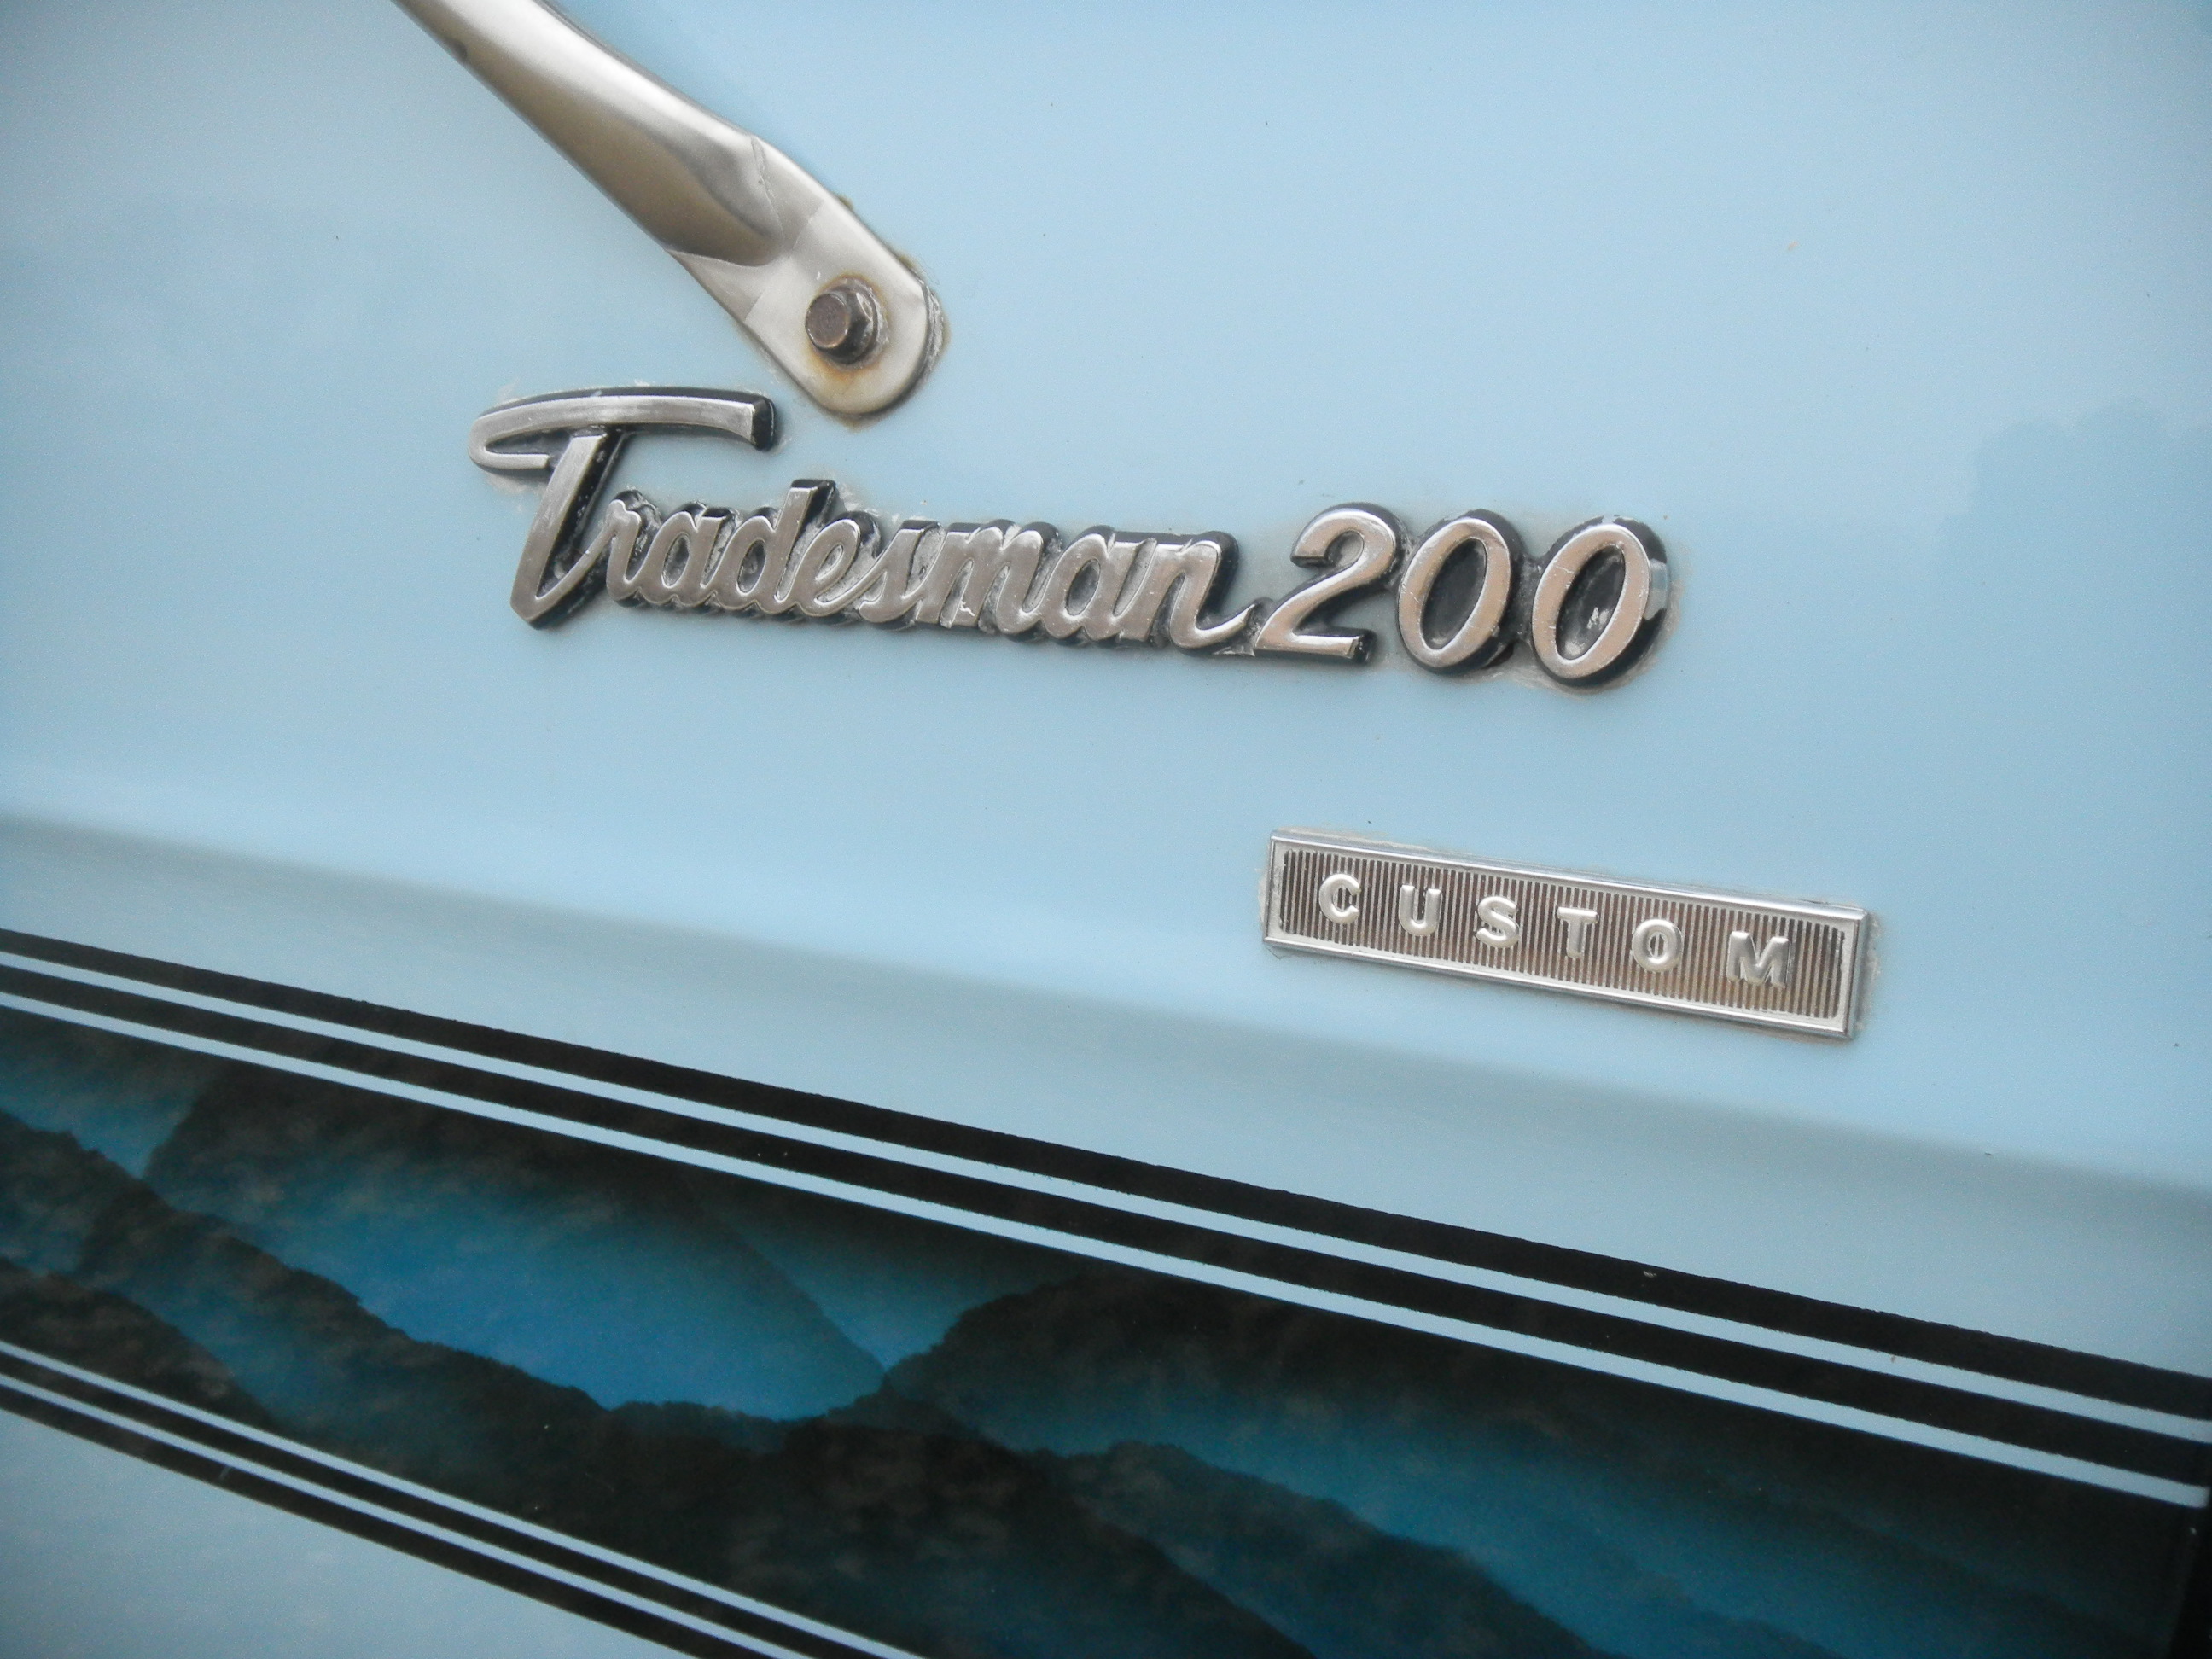 1977 Dodge Tradesman 200 custom maxivan. / Flickr - Partage de photos!